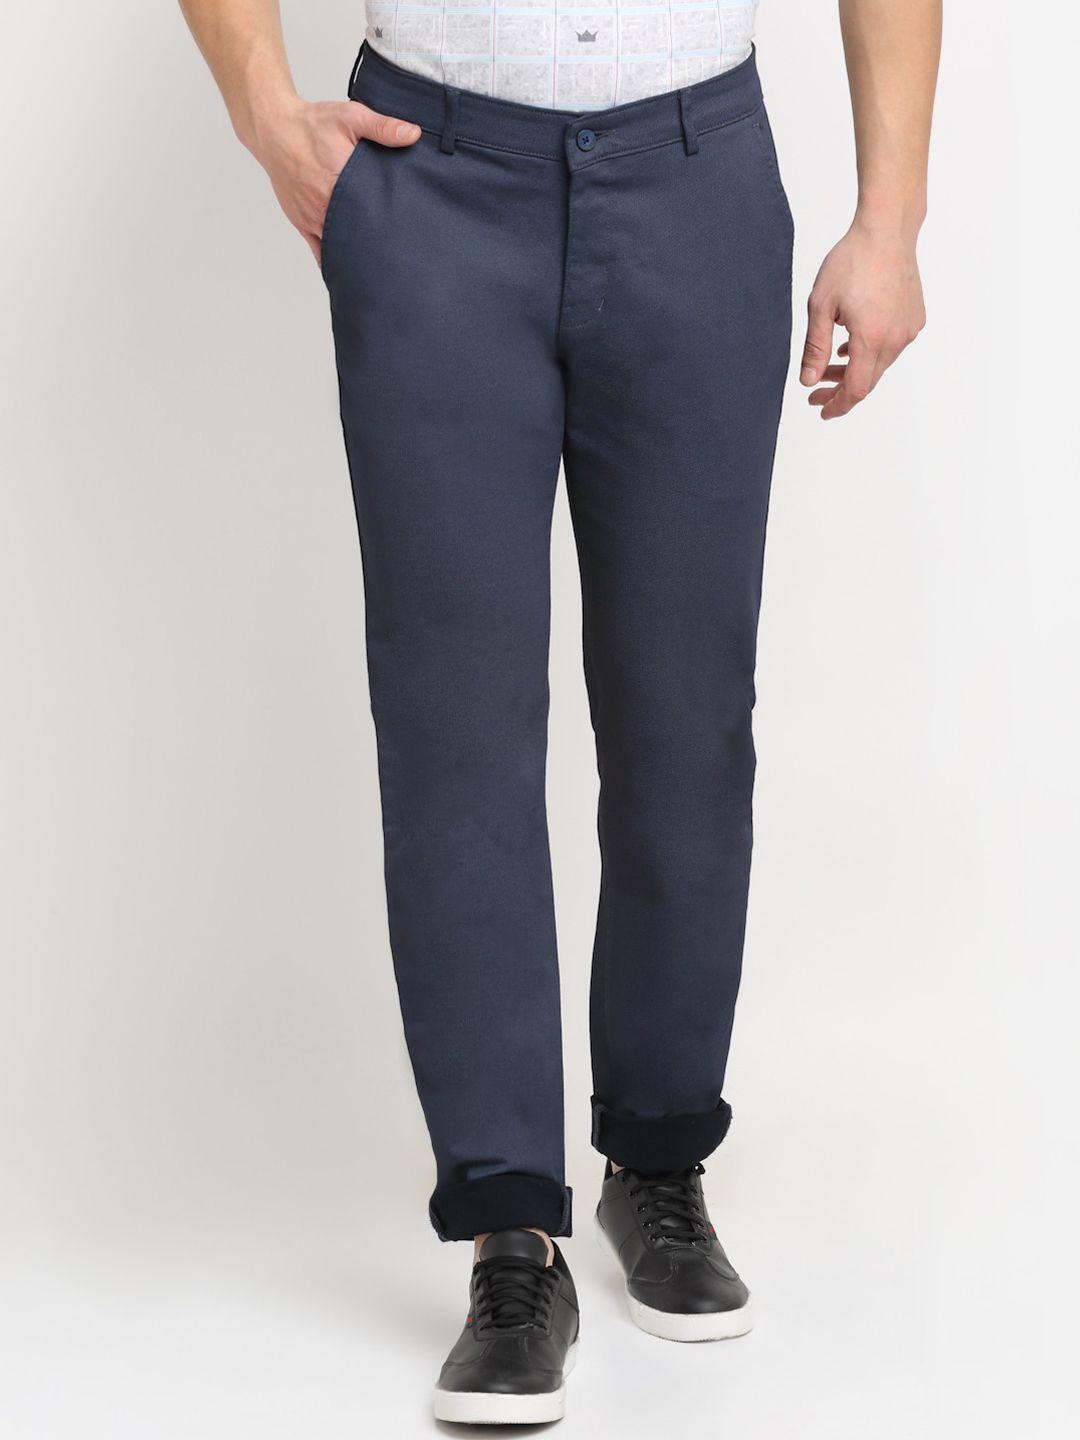 cantabil-men-navy-blue-original-pure-cotton-trousers